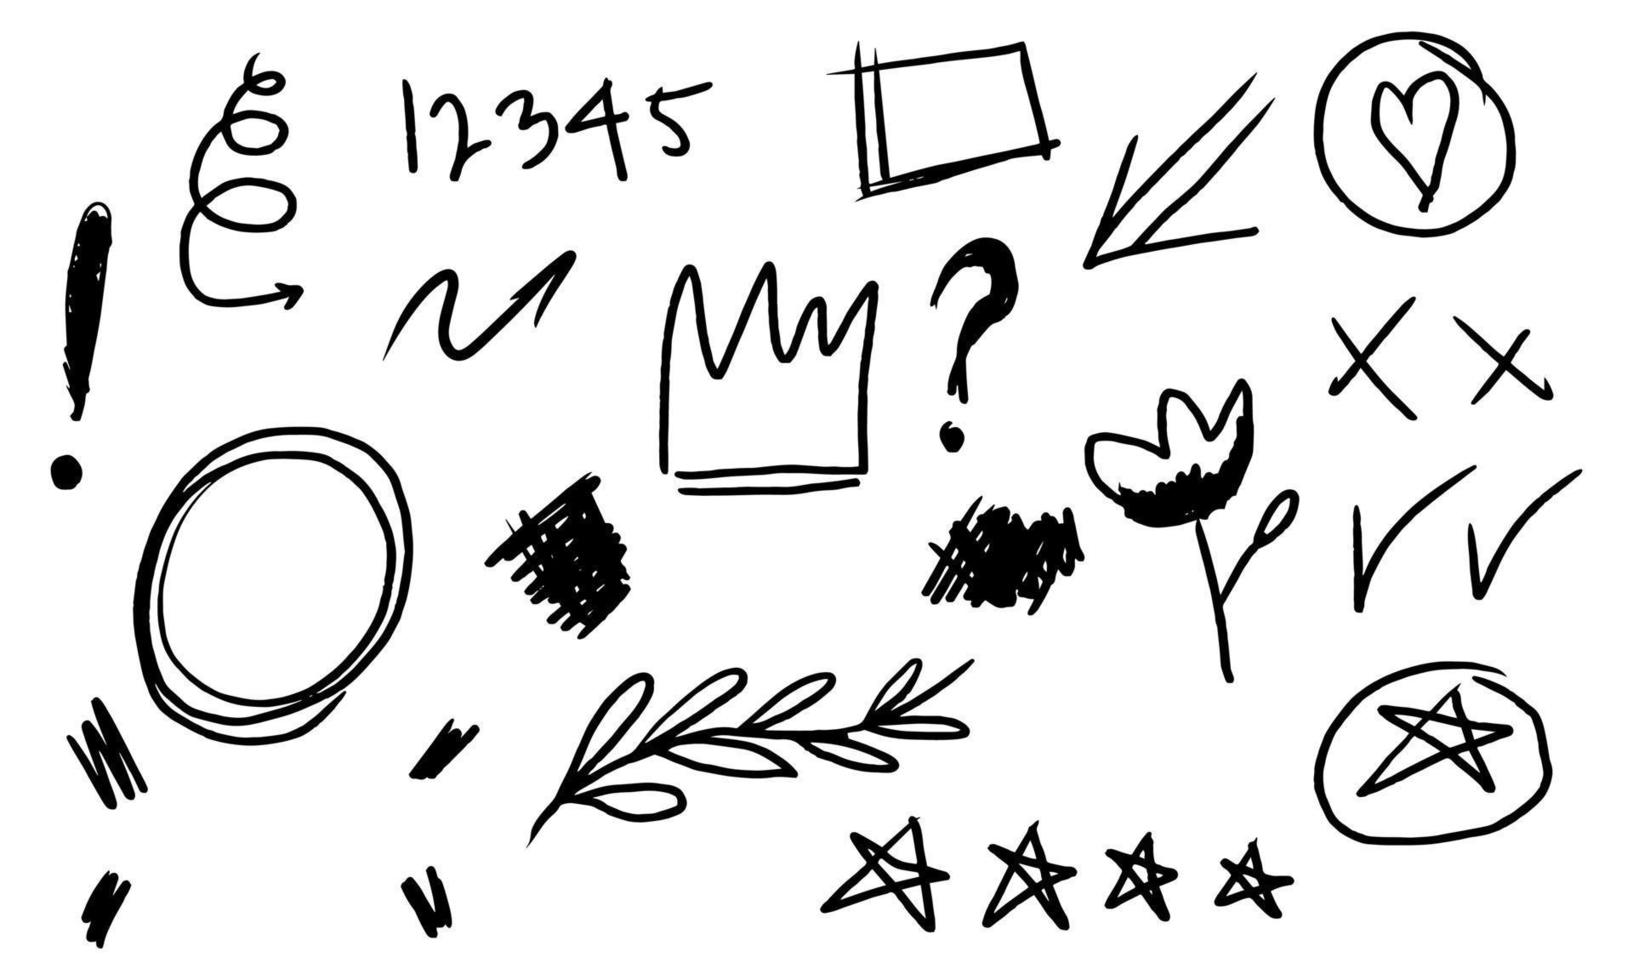 conjunto desenhado à mão de elementos doodle abstratos com coroa, estrela, redemoinho, swoosh, rabisco, seta, ênfase de texto. isolado no fundo branco. ilustração vetorial vetor